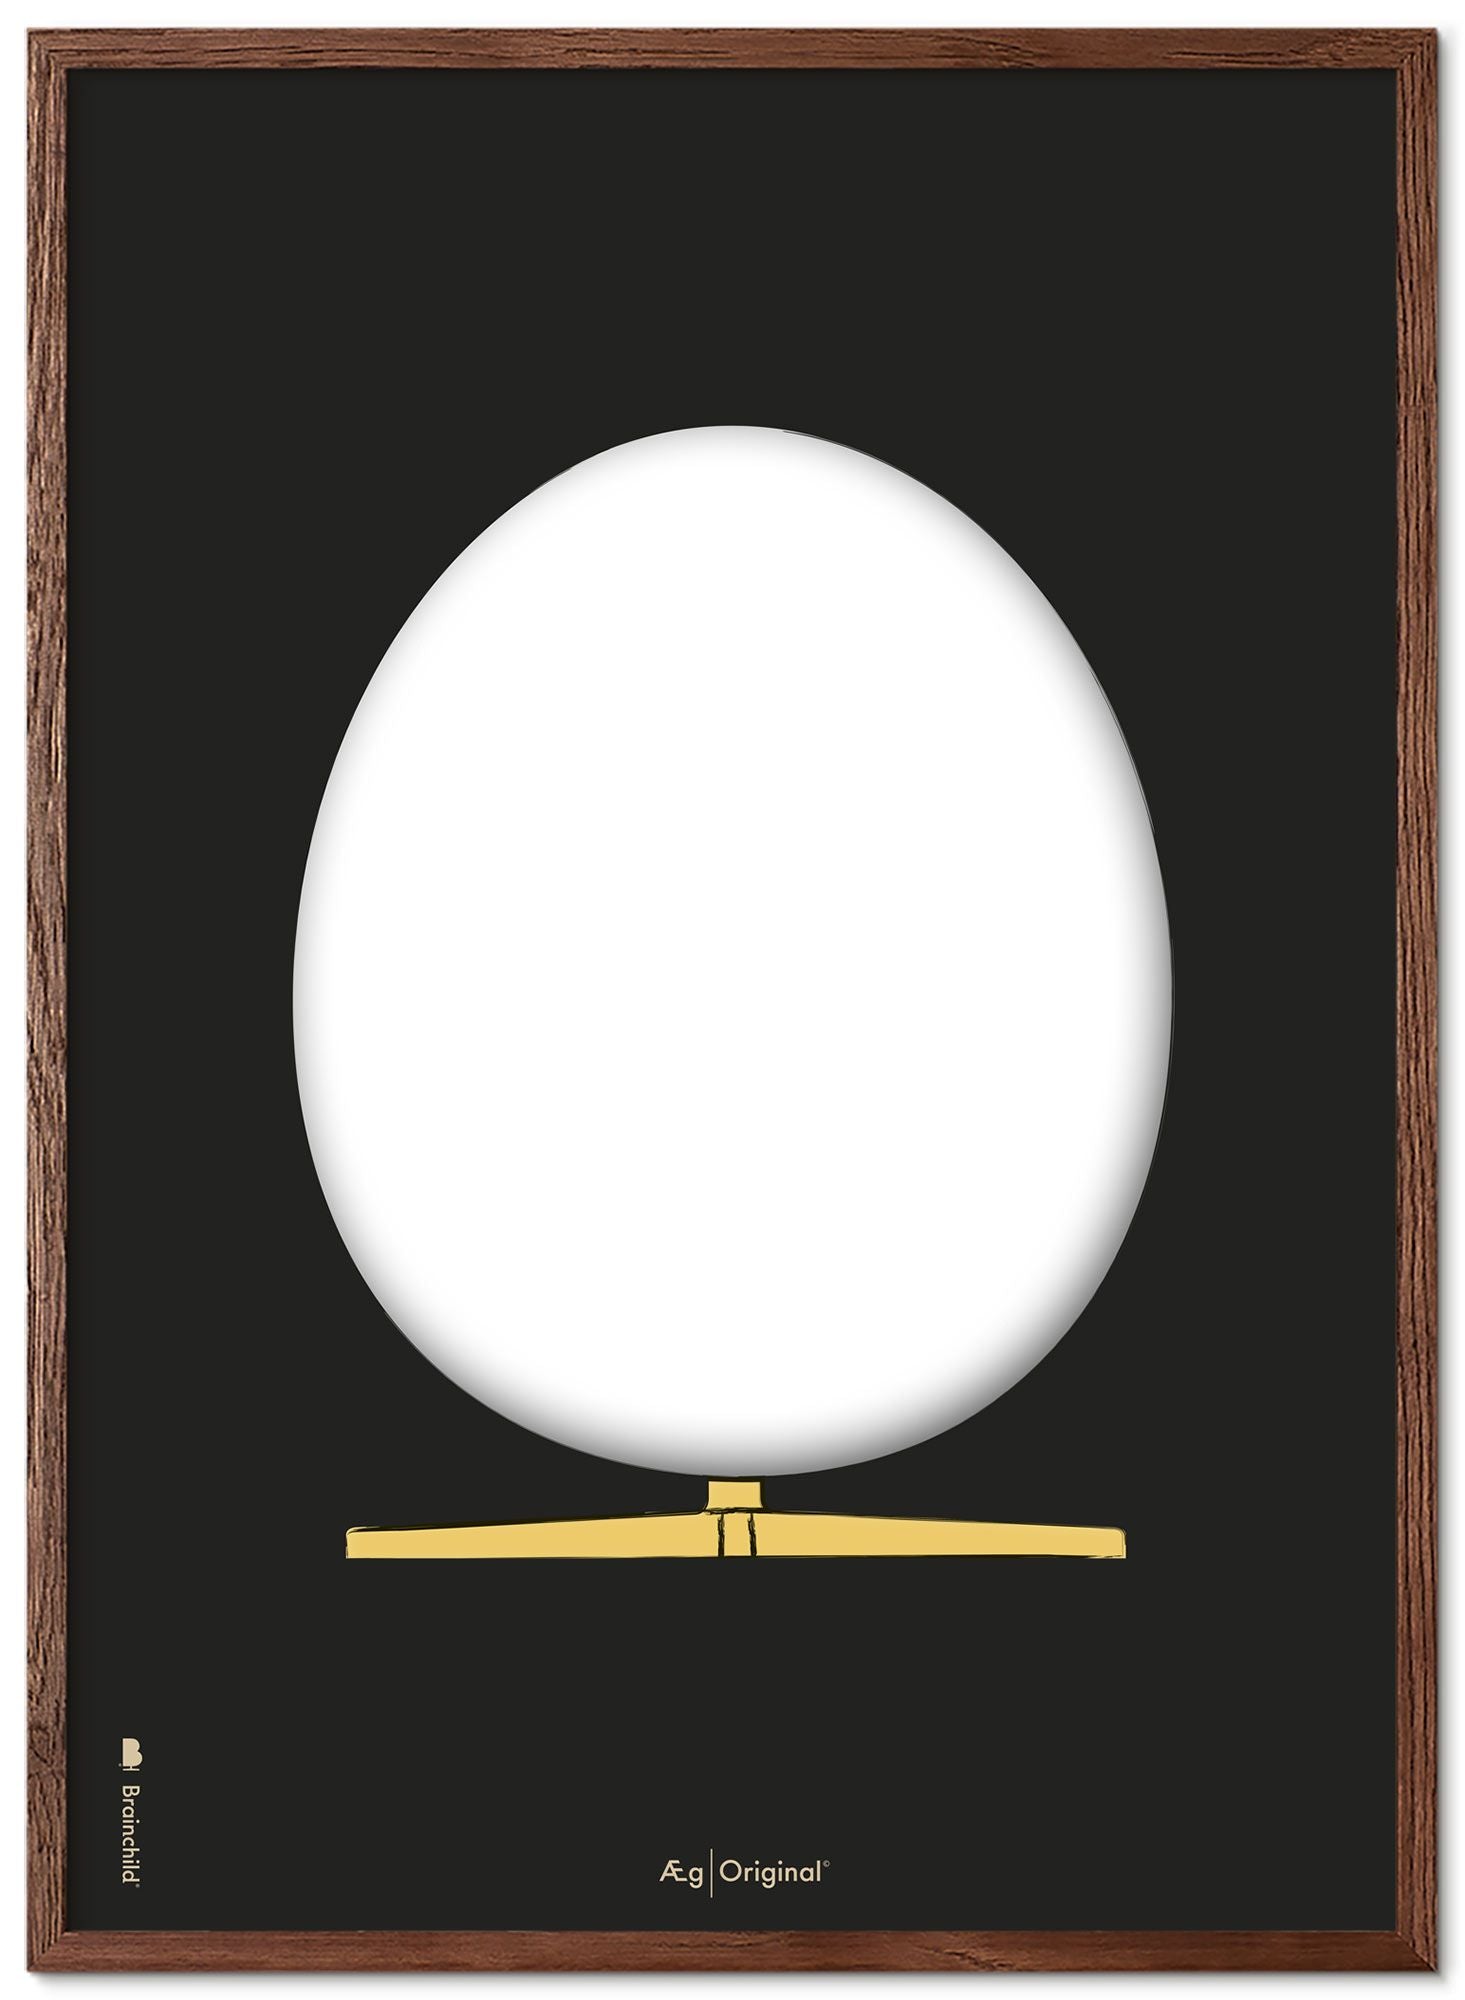 Prepare el marco de póster de boceto de diseño de huevo hecho de madera oscura de 30x40 cm, fondo negro